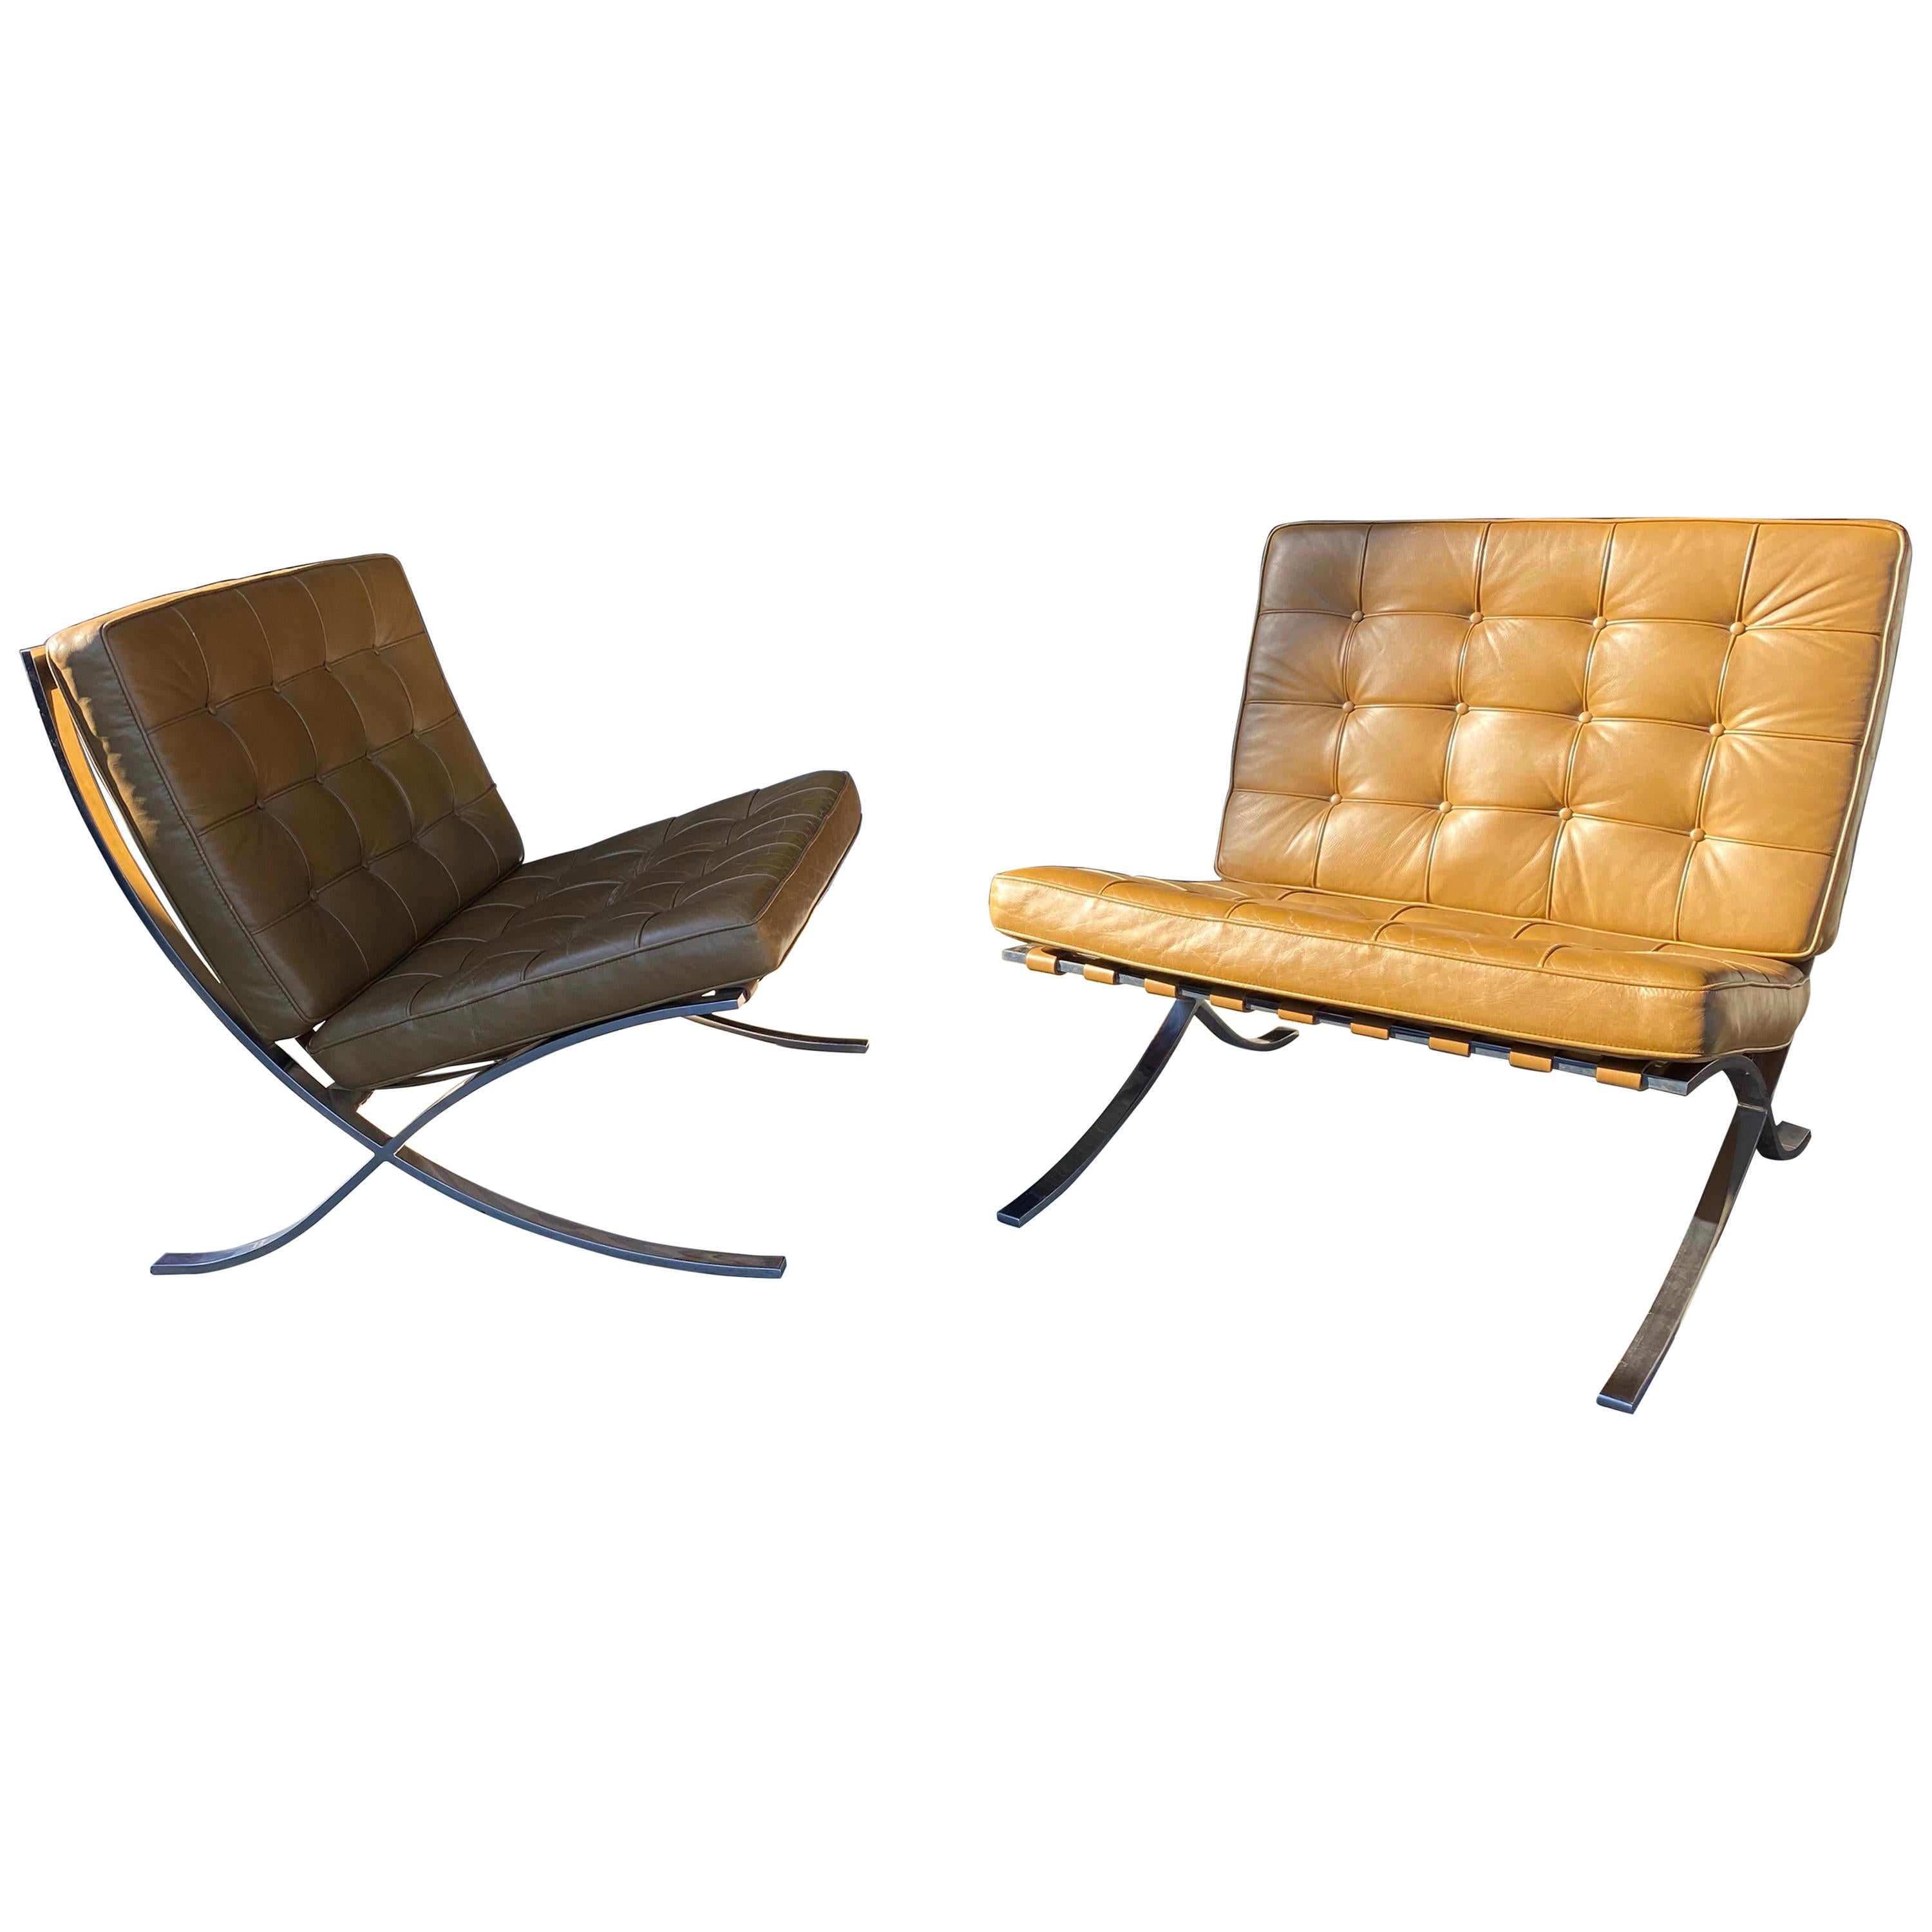 Une paire de collectionneurs ! Cette paire de chaises Barcelona a été fabriquée par Gerald R. Griffith sous l'étroite supervision de Mies van der Rohe, pré-Knoll. Les chaises Griffith ont des coins extrêmement précis et moins de renforcement au